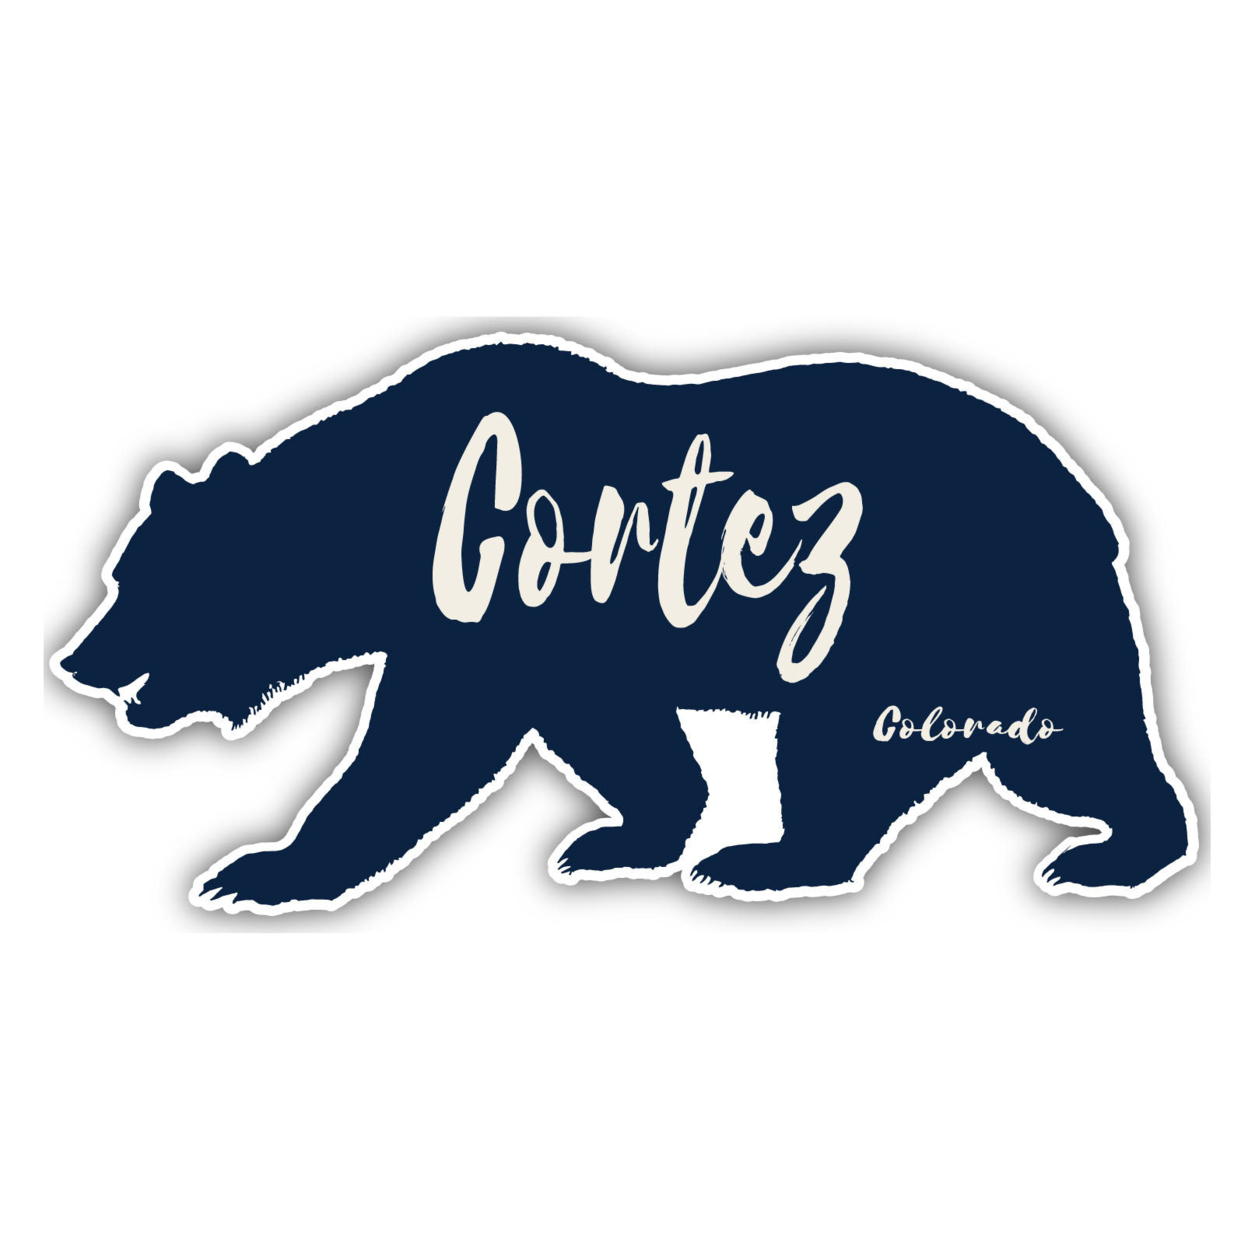 Cortez Colorado Souvenir Decorative Stickers (Choose Theme And Size) - Single Unit, 6-Inch, Tent